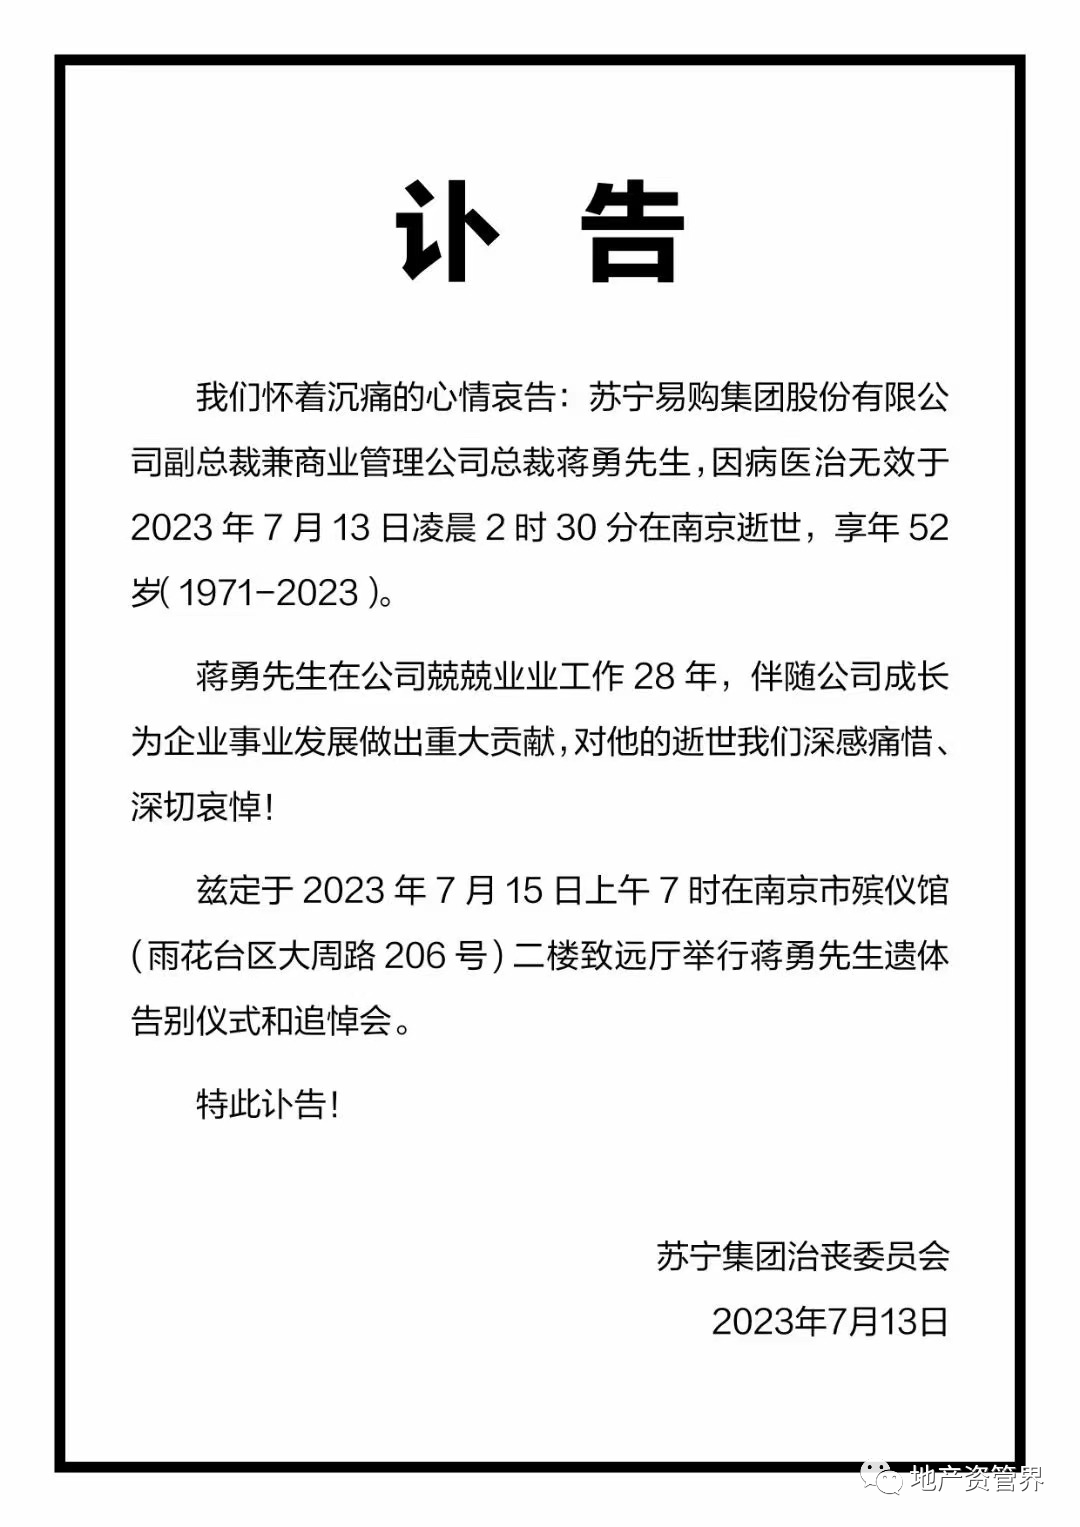 苏宁易购总体副总裁兼商业规画公司总裁蒋勇学生去世